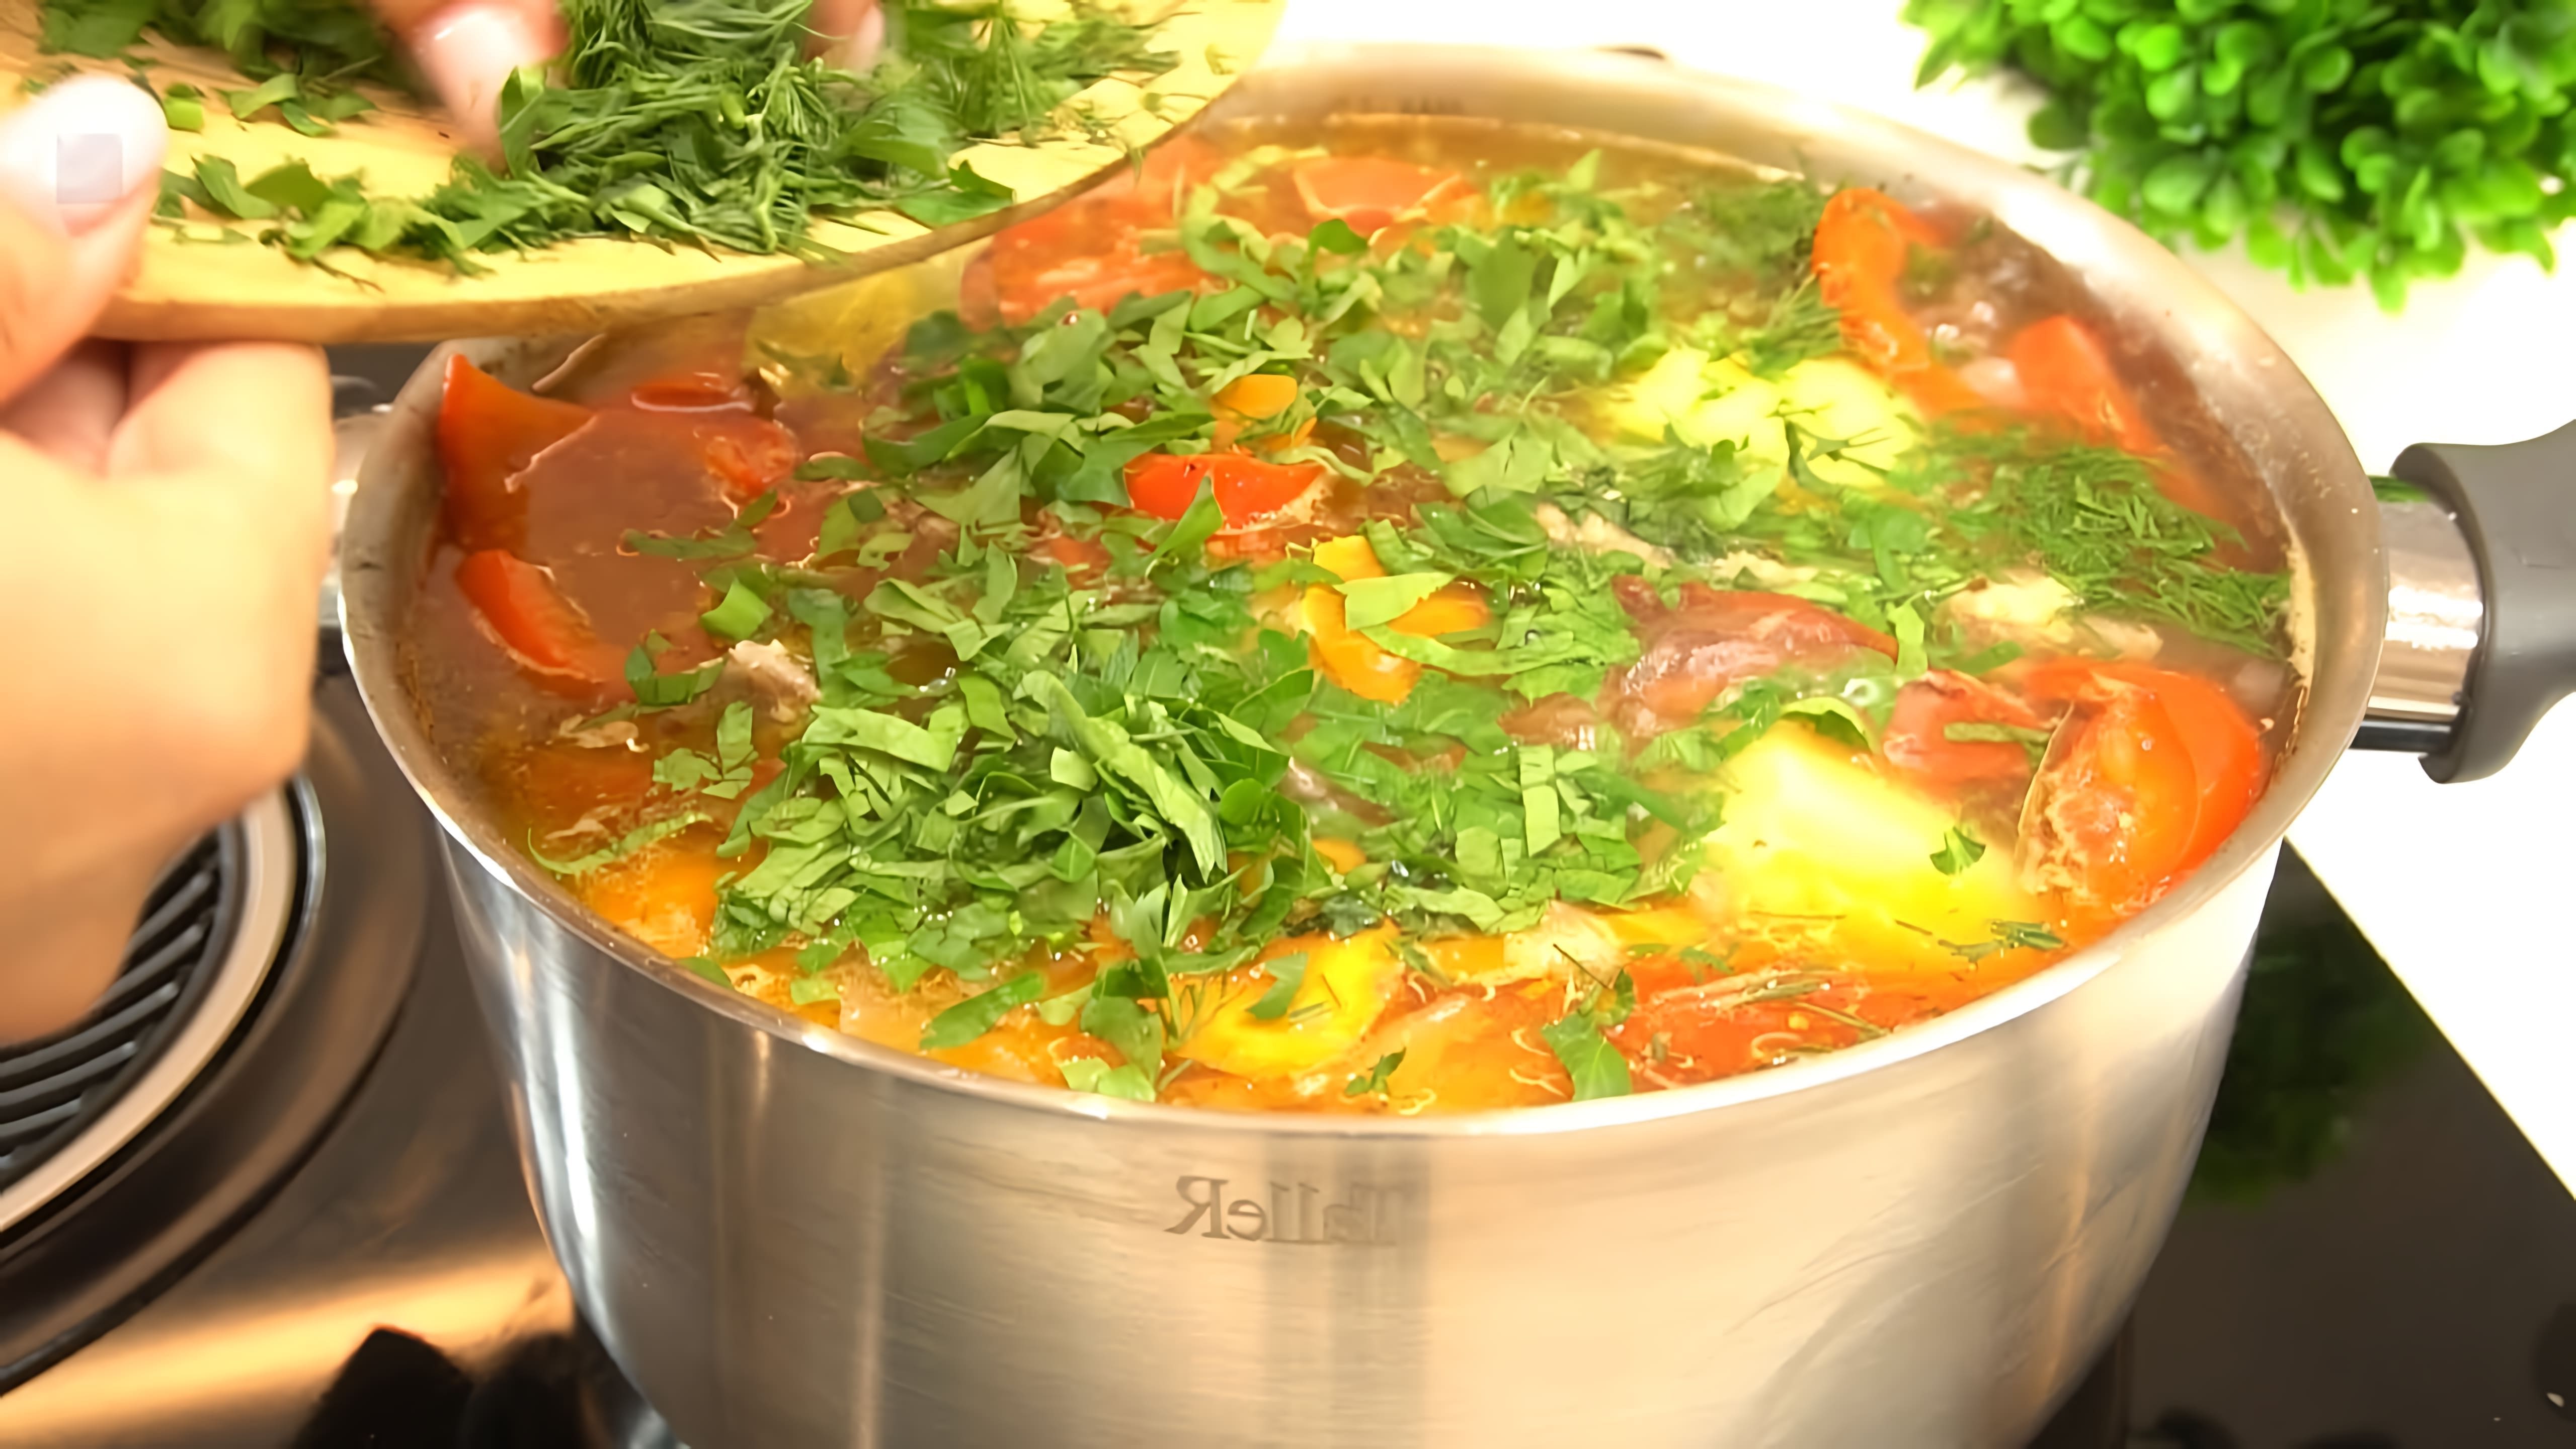 В этом видео демонстрируется процесс приготовления шурпы - традиционного узбекского блюда